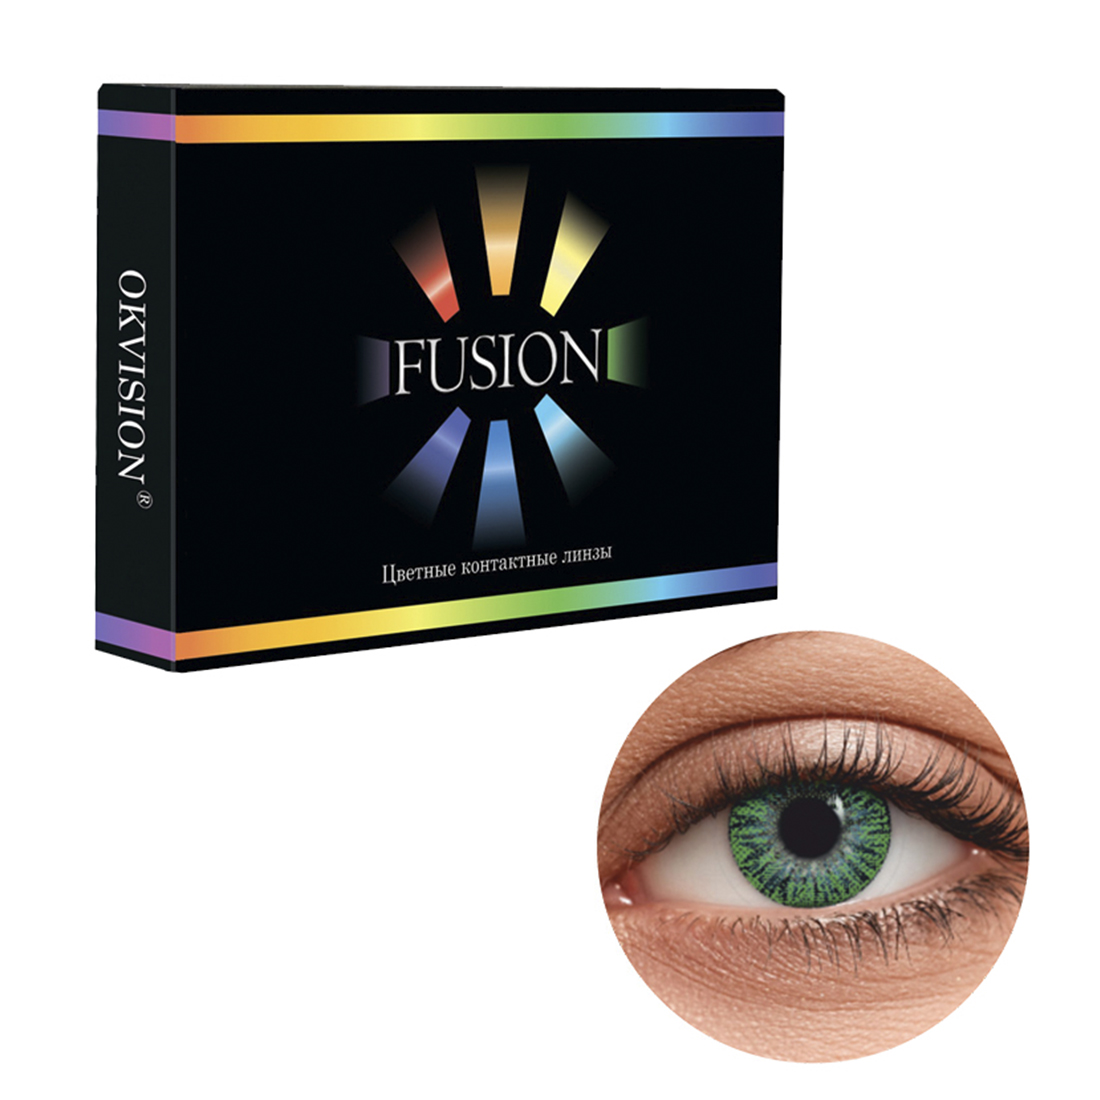 Цветные контактные линзы OKVision Fusion monthly R 8.6 -0.50 цвет Lime 2 шт 1 месяц - фото 1